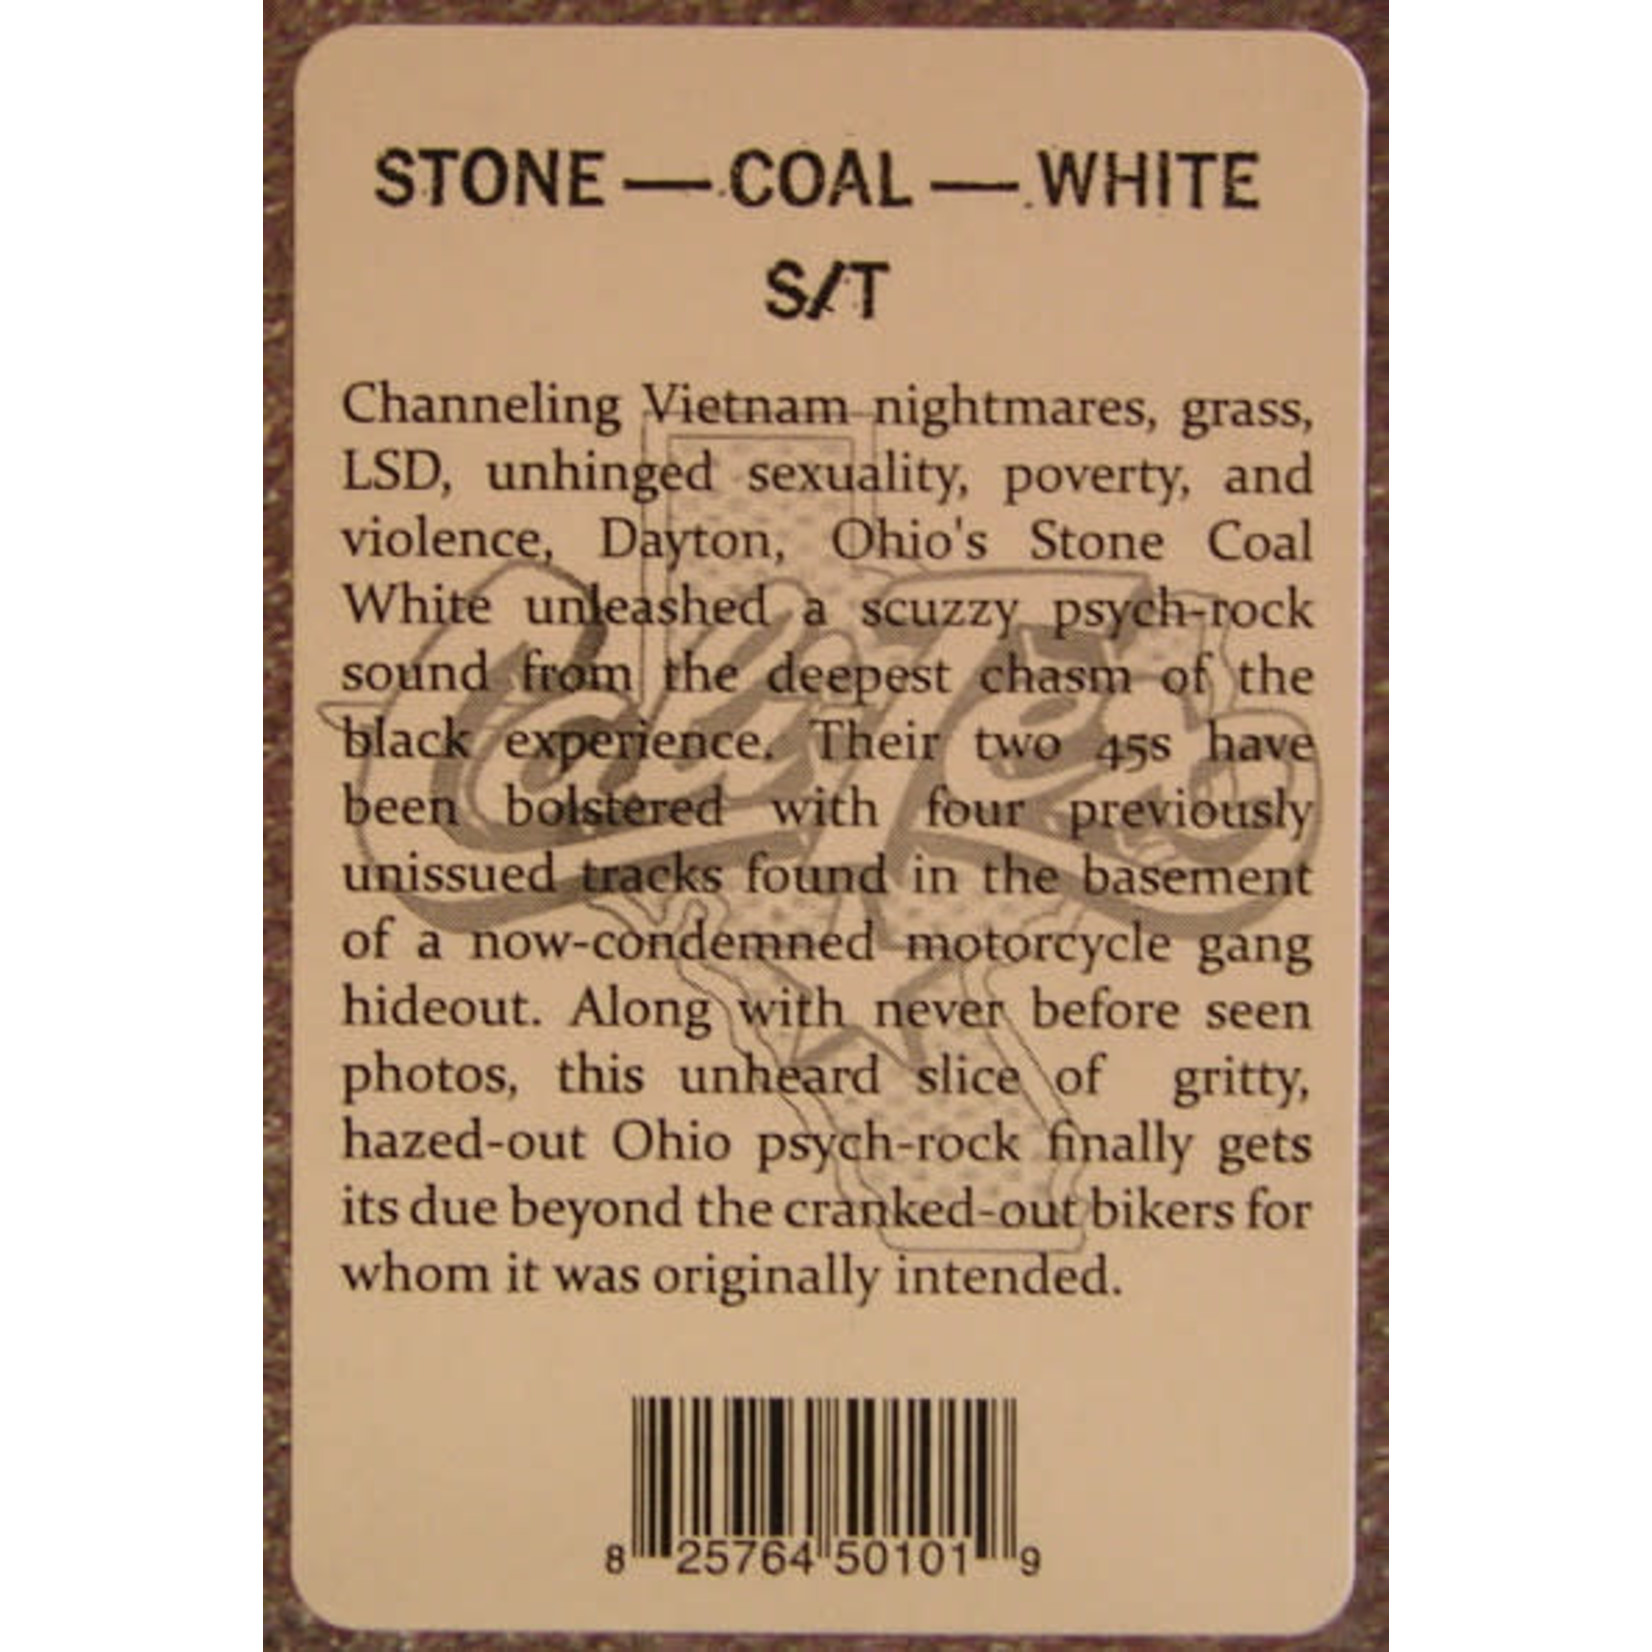 Stone Coal White - Stone Coal White (LP)